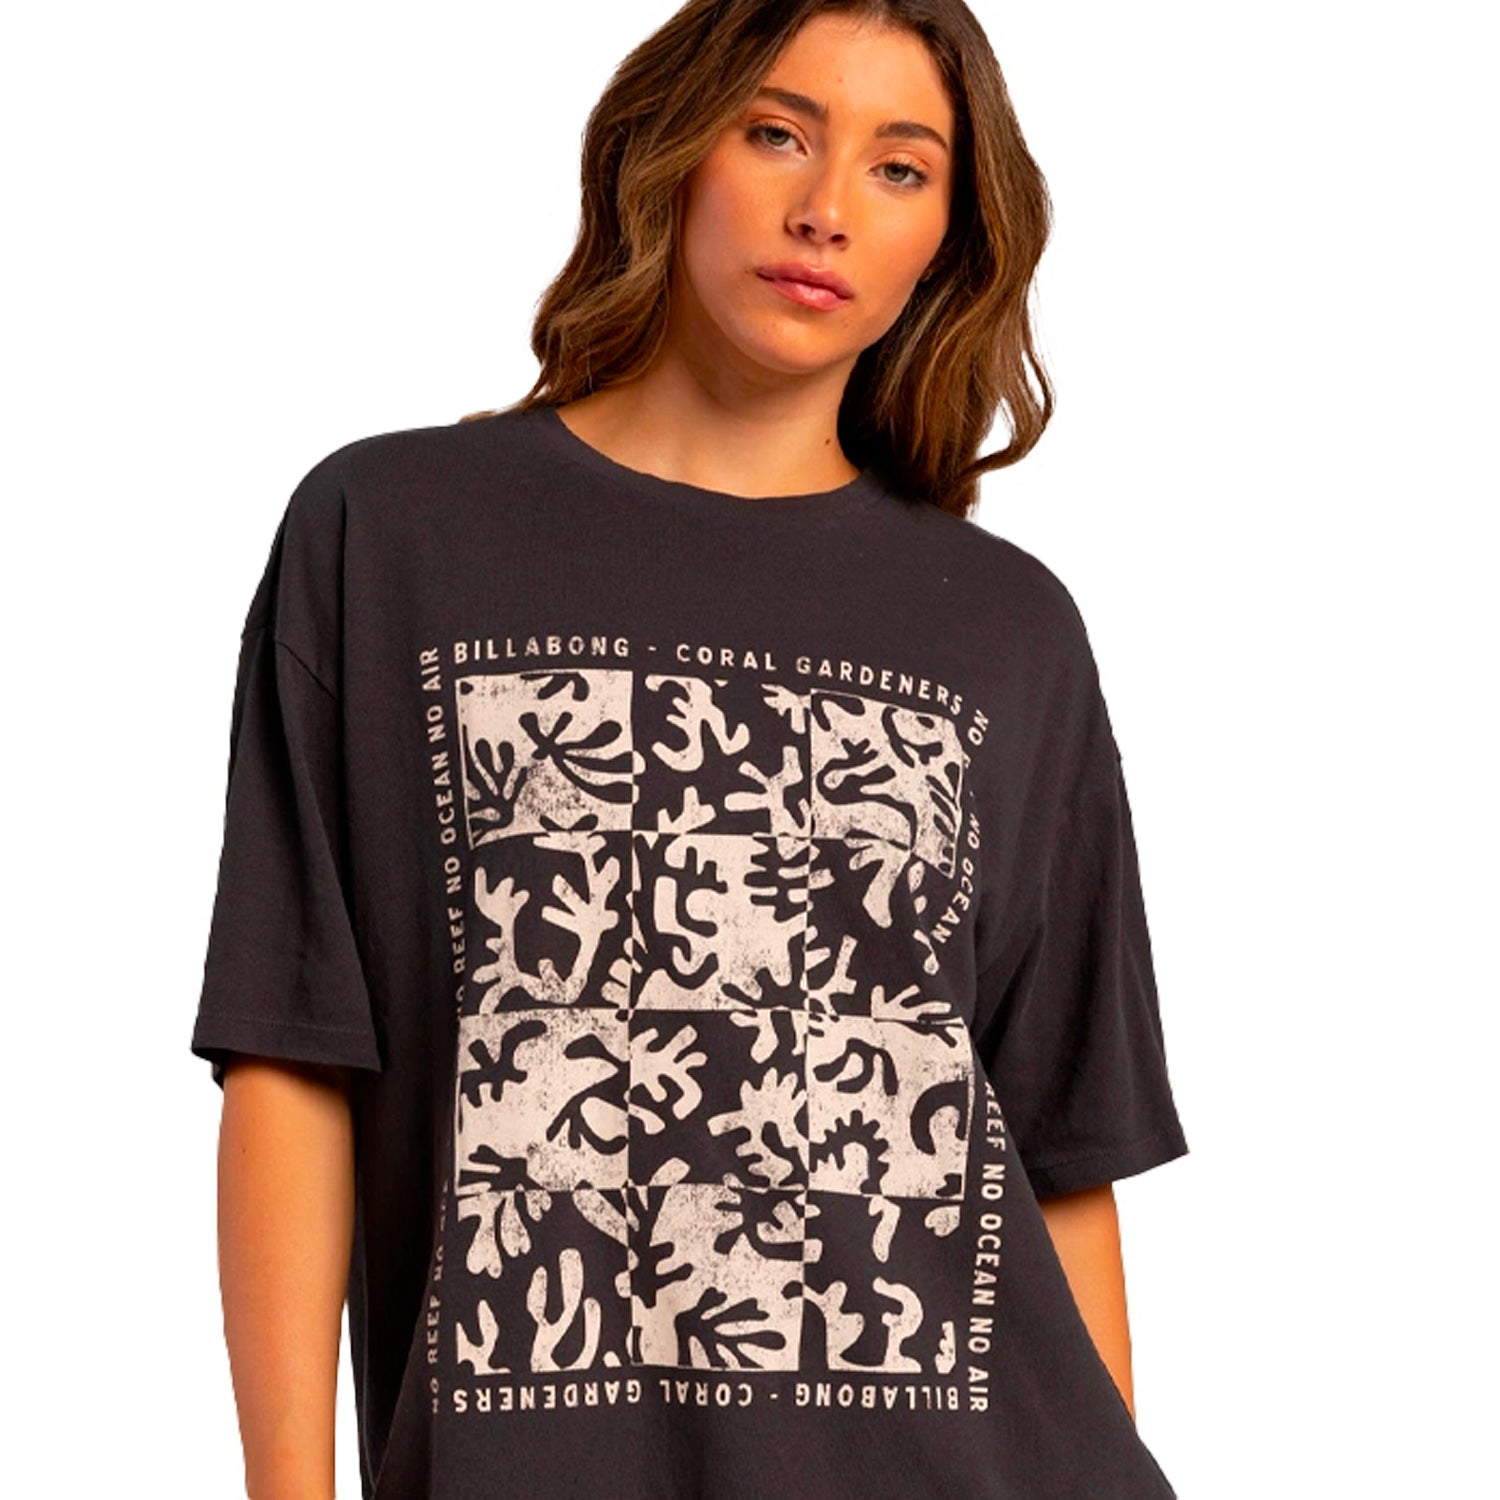 Billabong | True Boy Coral Gardener T-Shirt - Black Sands